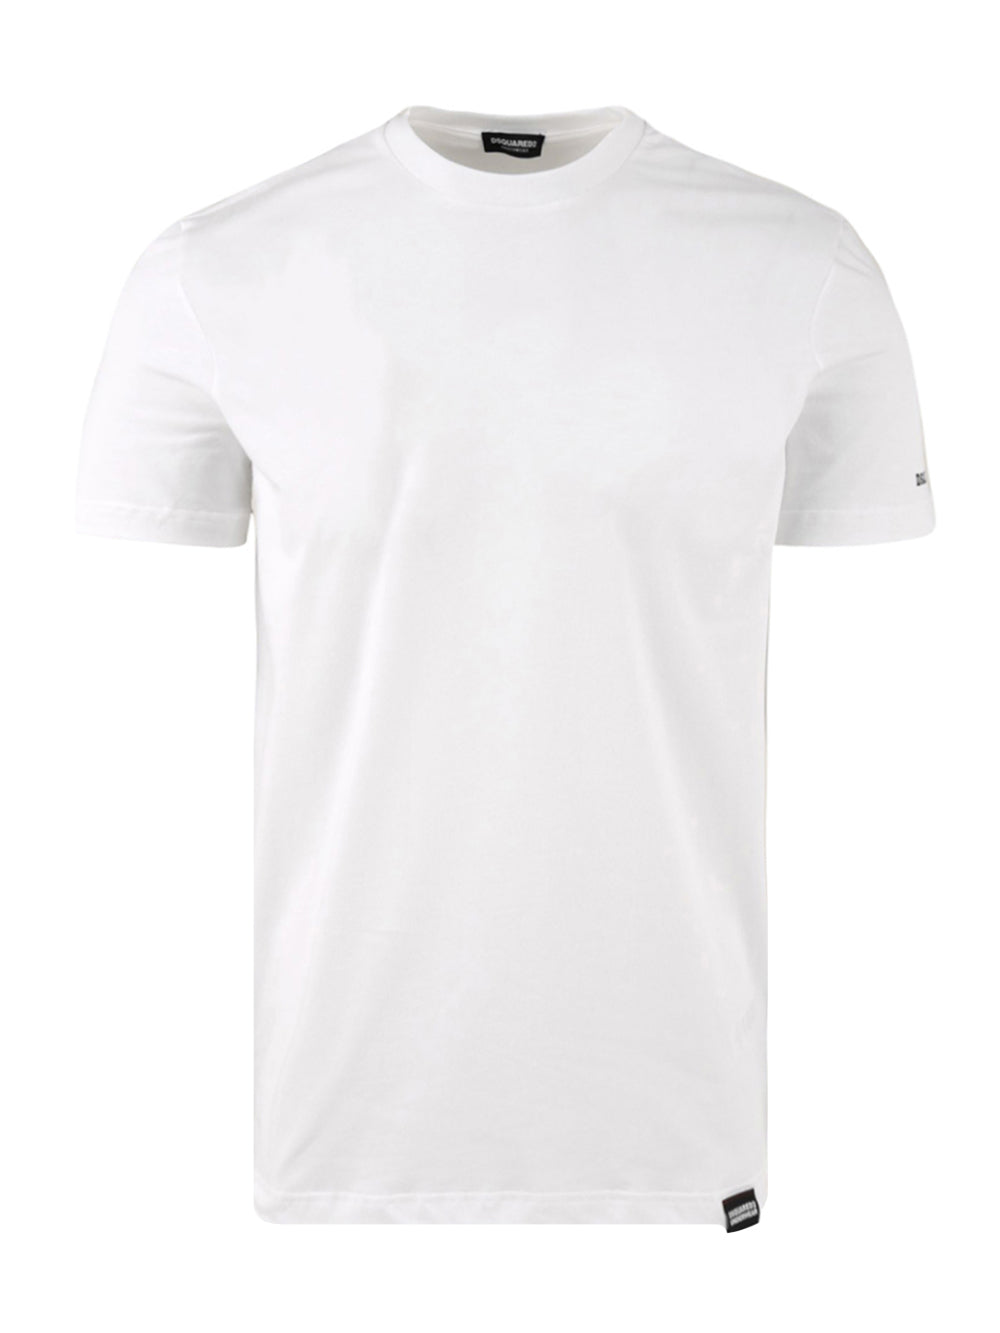 T-shirt intima Uomo con logo sulla manica